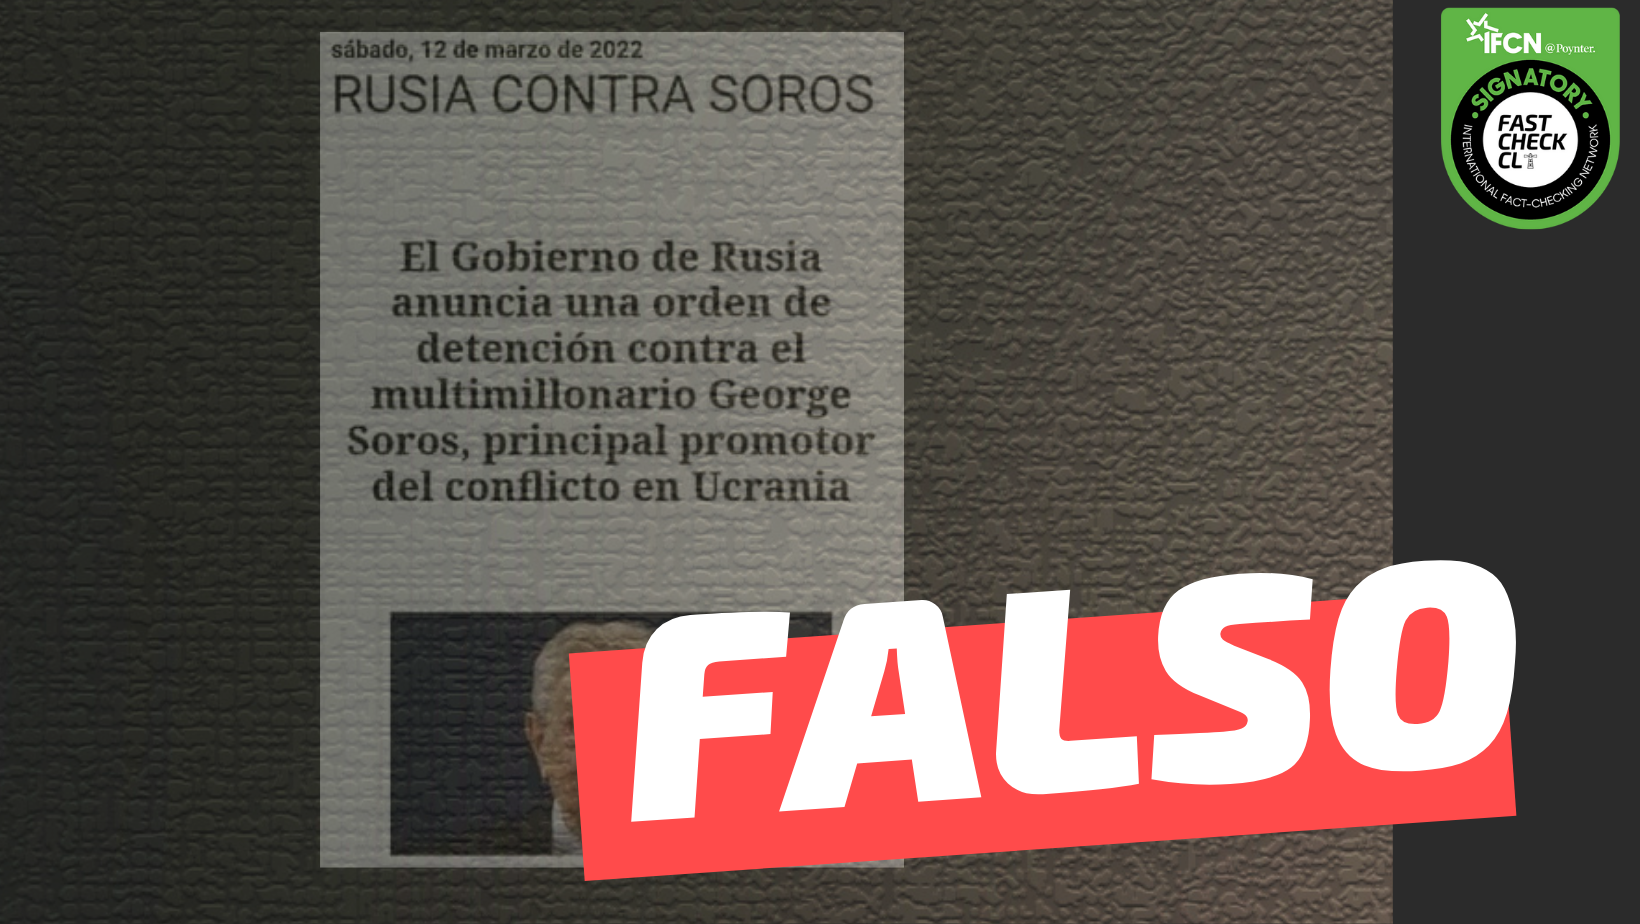 Read more about the article “El Gobierno de Rusia anuncia una orden de detención contra el multimillonario George Soros, principal promotor del conflicto en Ucrania”: #Falso